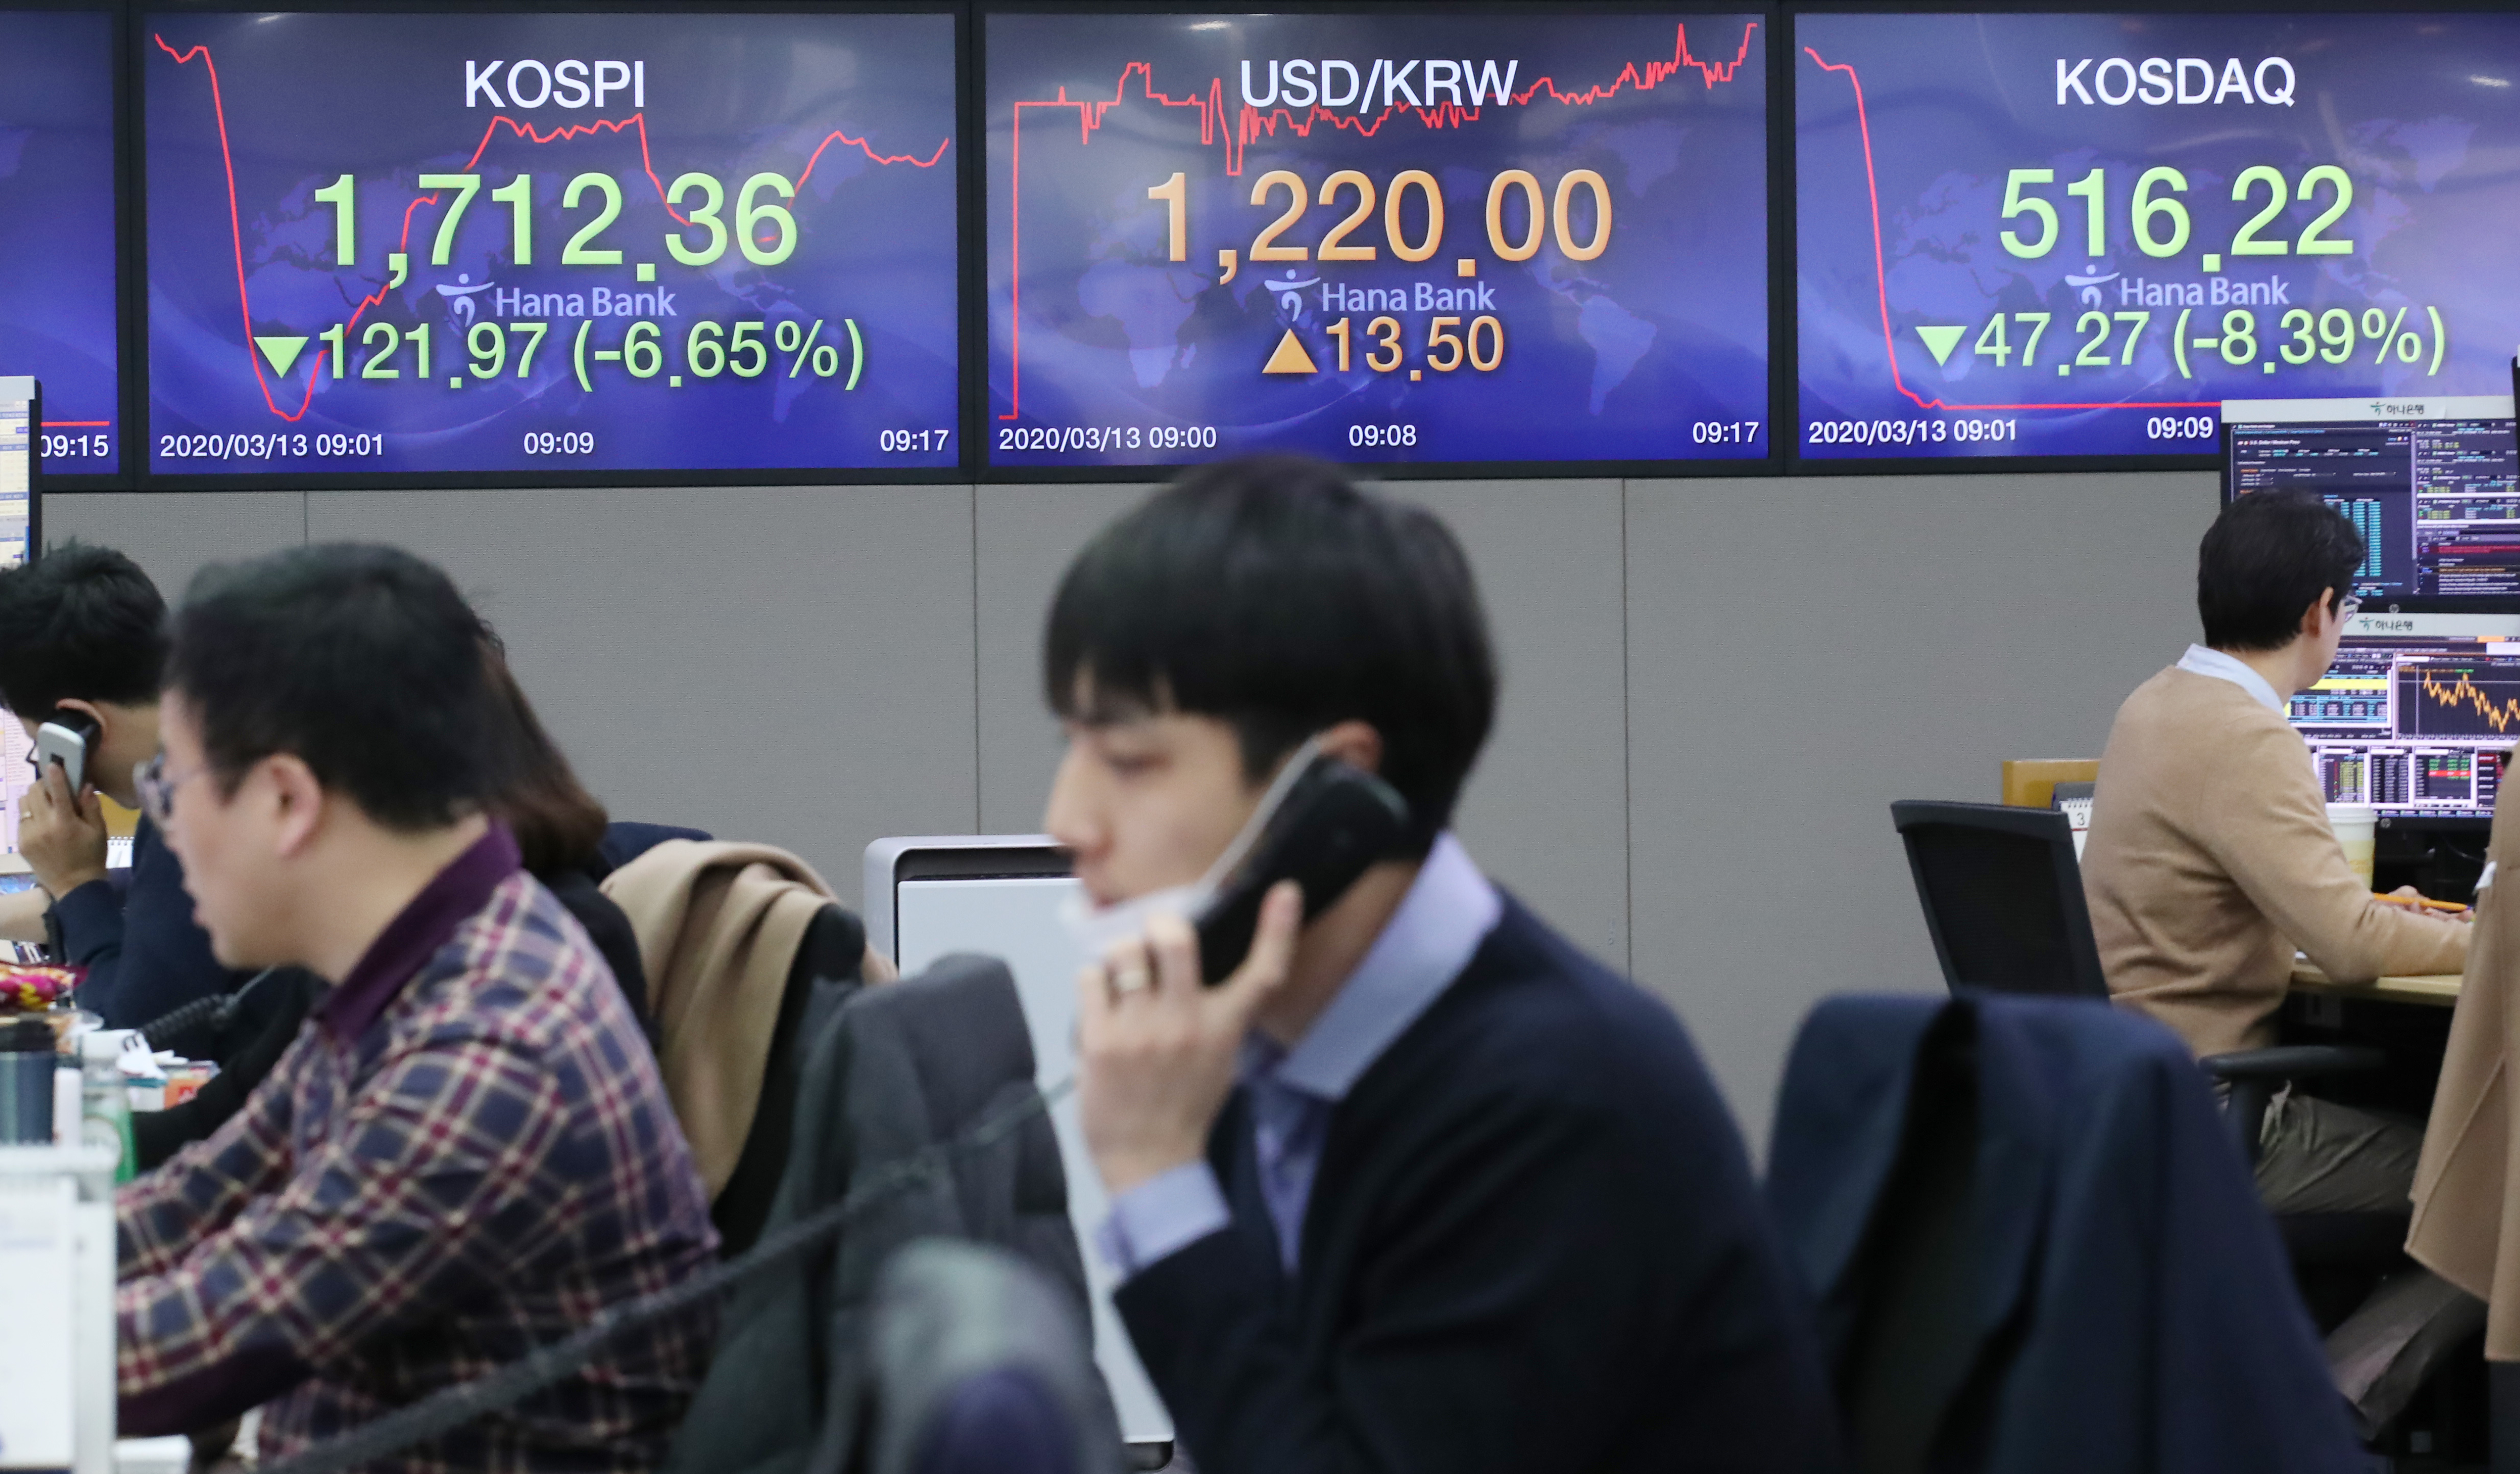 Seoul stocks crash to 8 1/2-year low on virus panic selling, Korean won at 4-year low